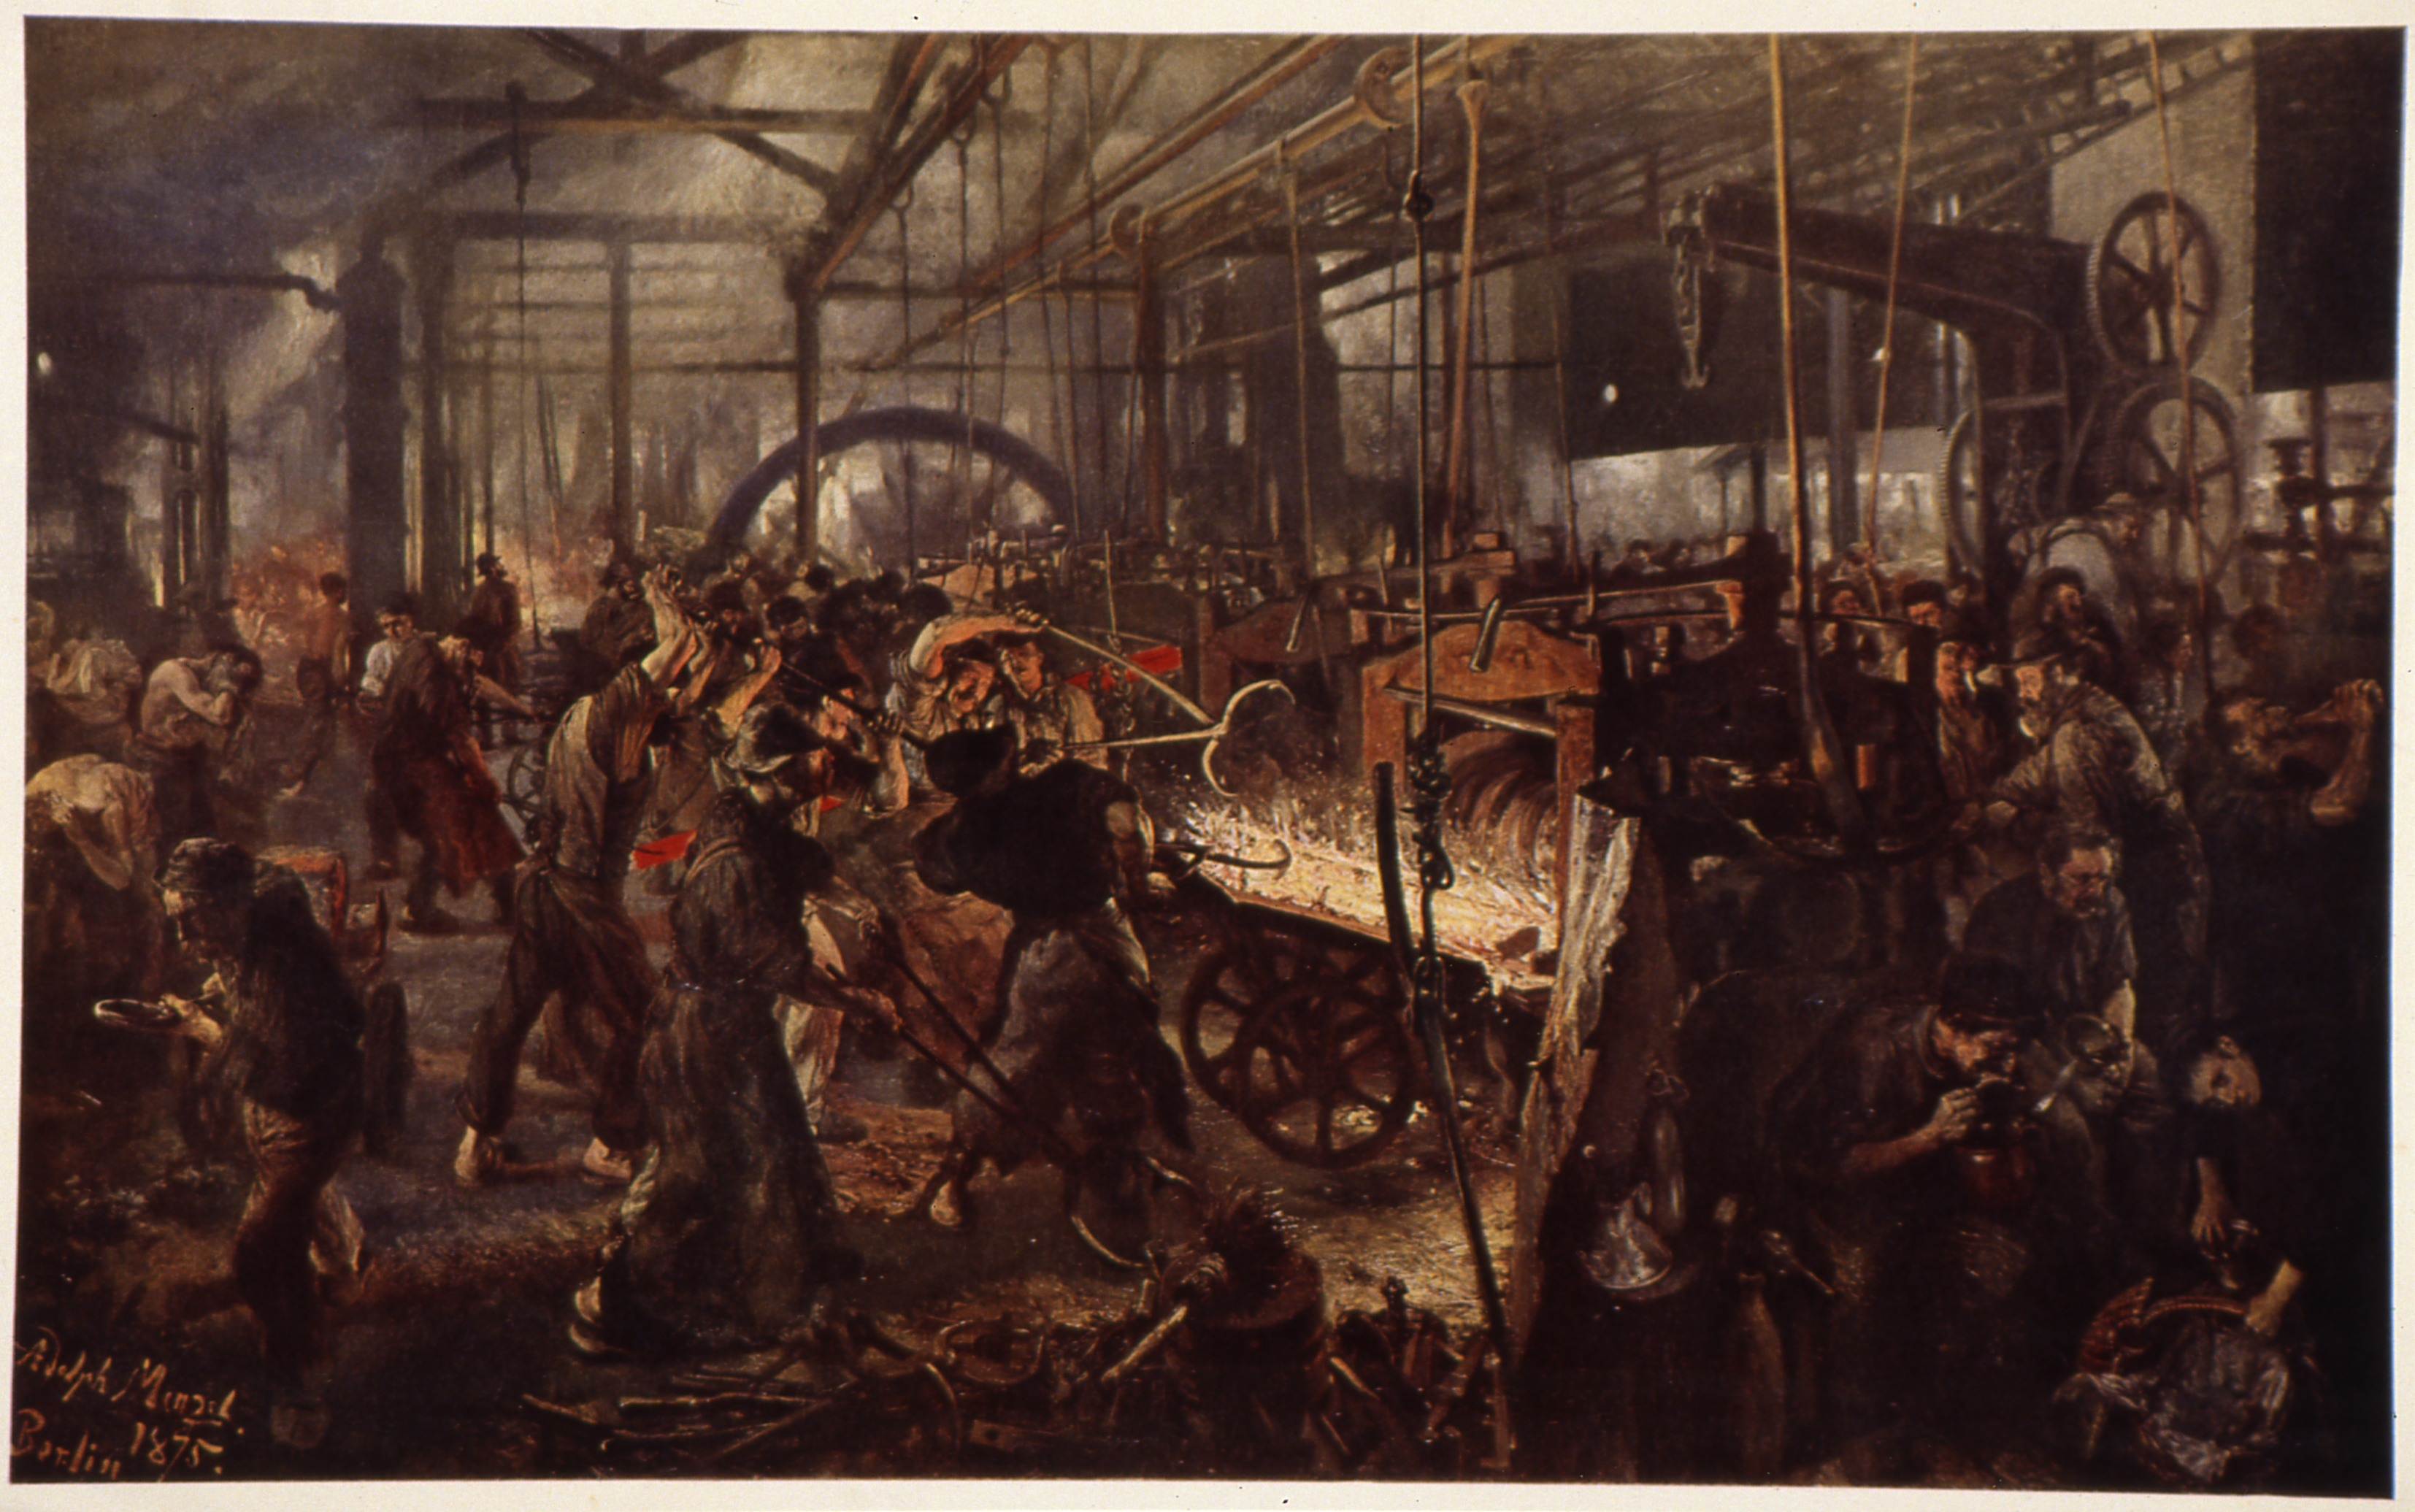 Gemälde: Das Eisenwalzwerk, 1875